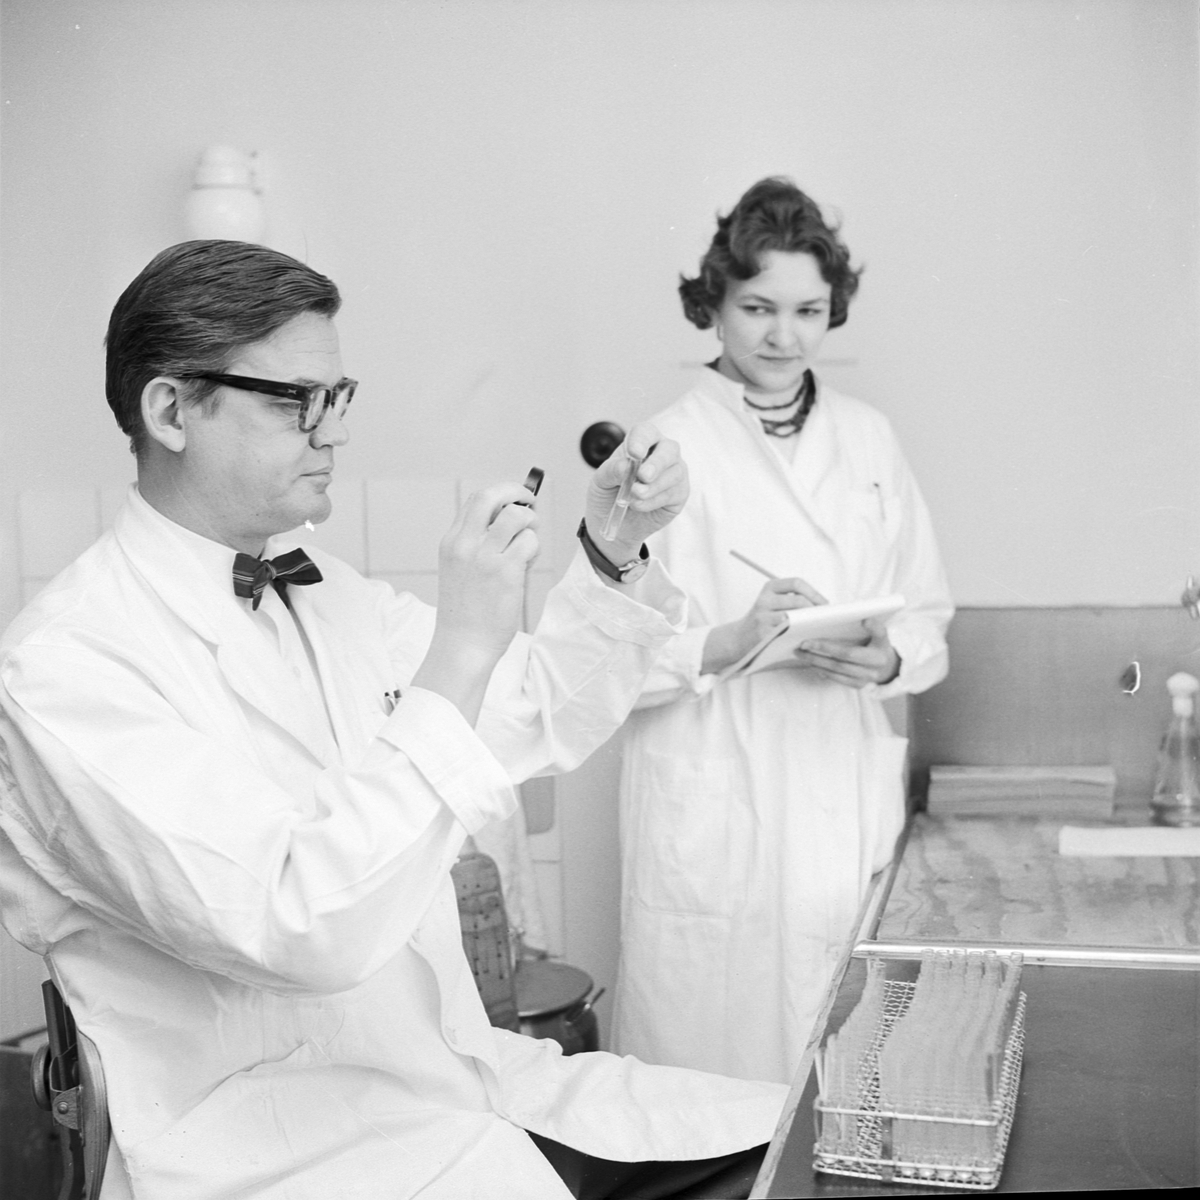 Hygienisk-bakteriologiska institutionen, laborator Gunnar Laurell med sköterska, Uppsala 1960